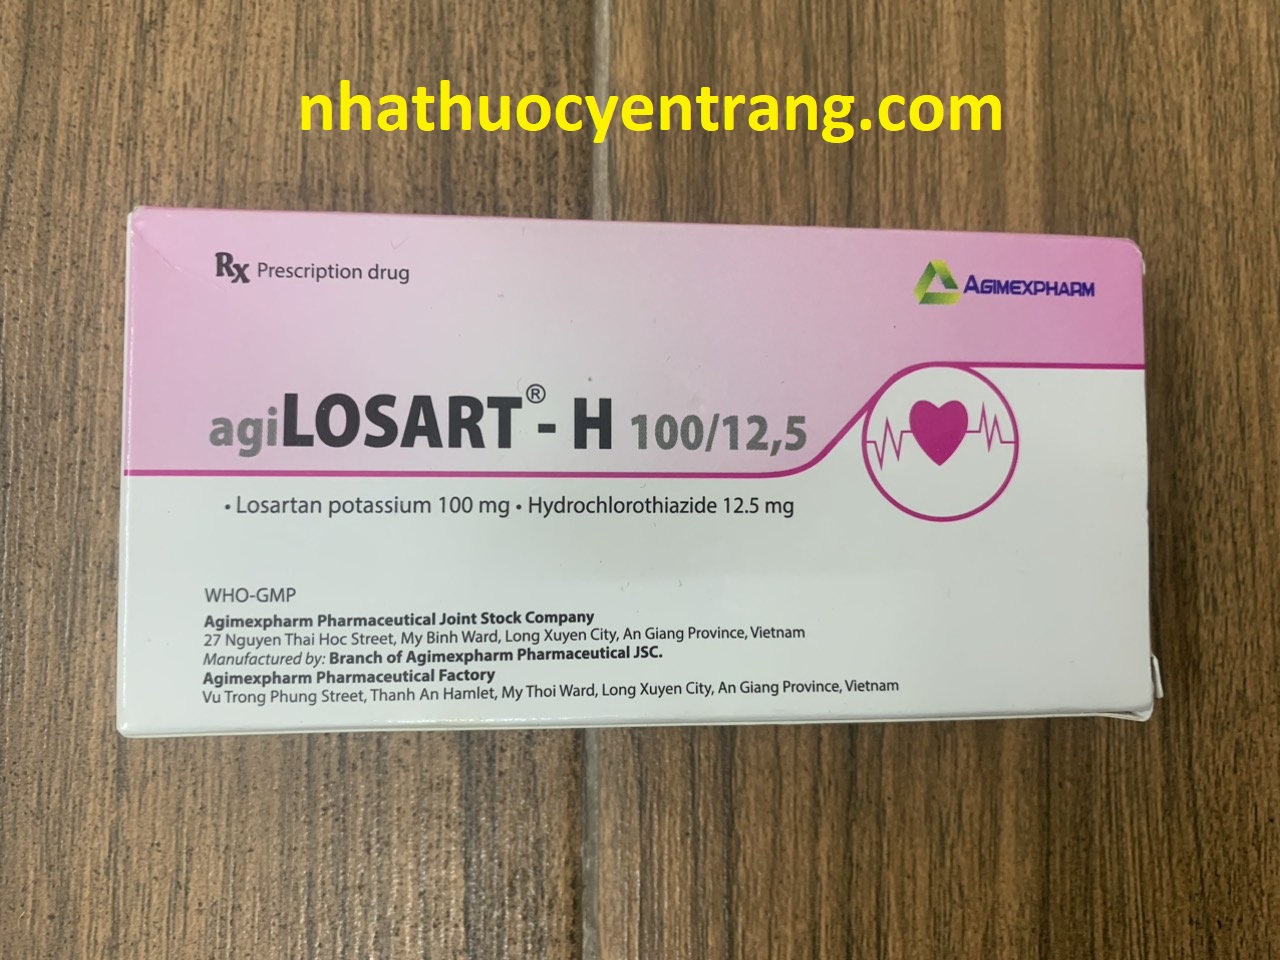 AgiLosart - H 100/12.5